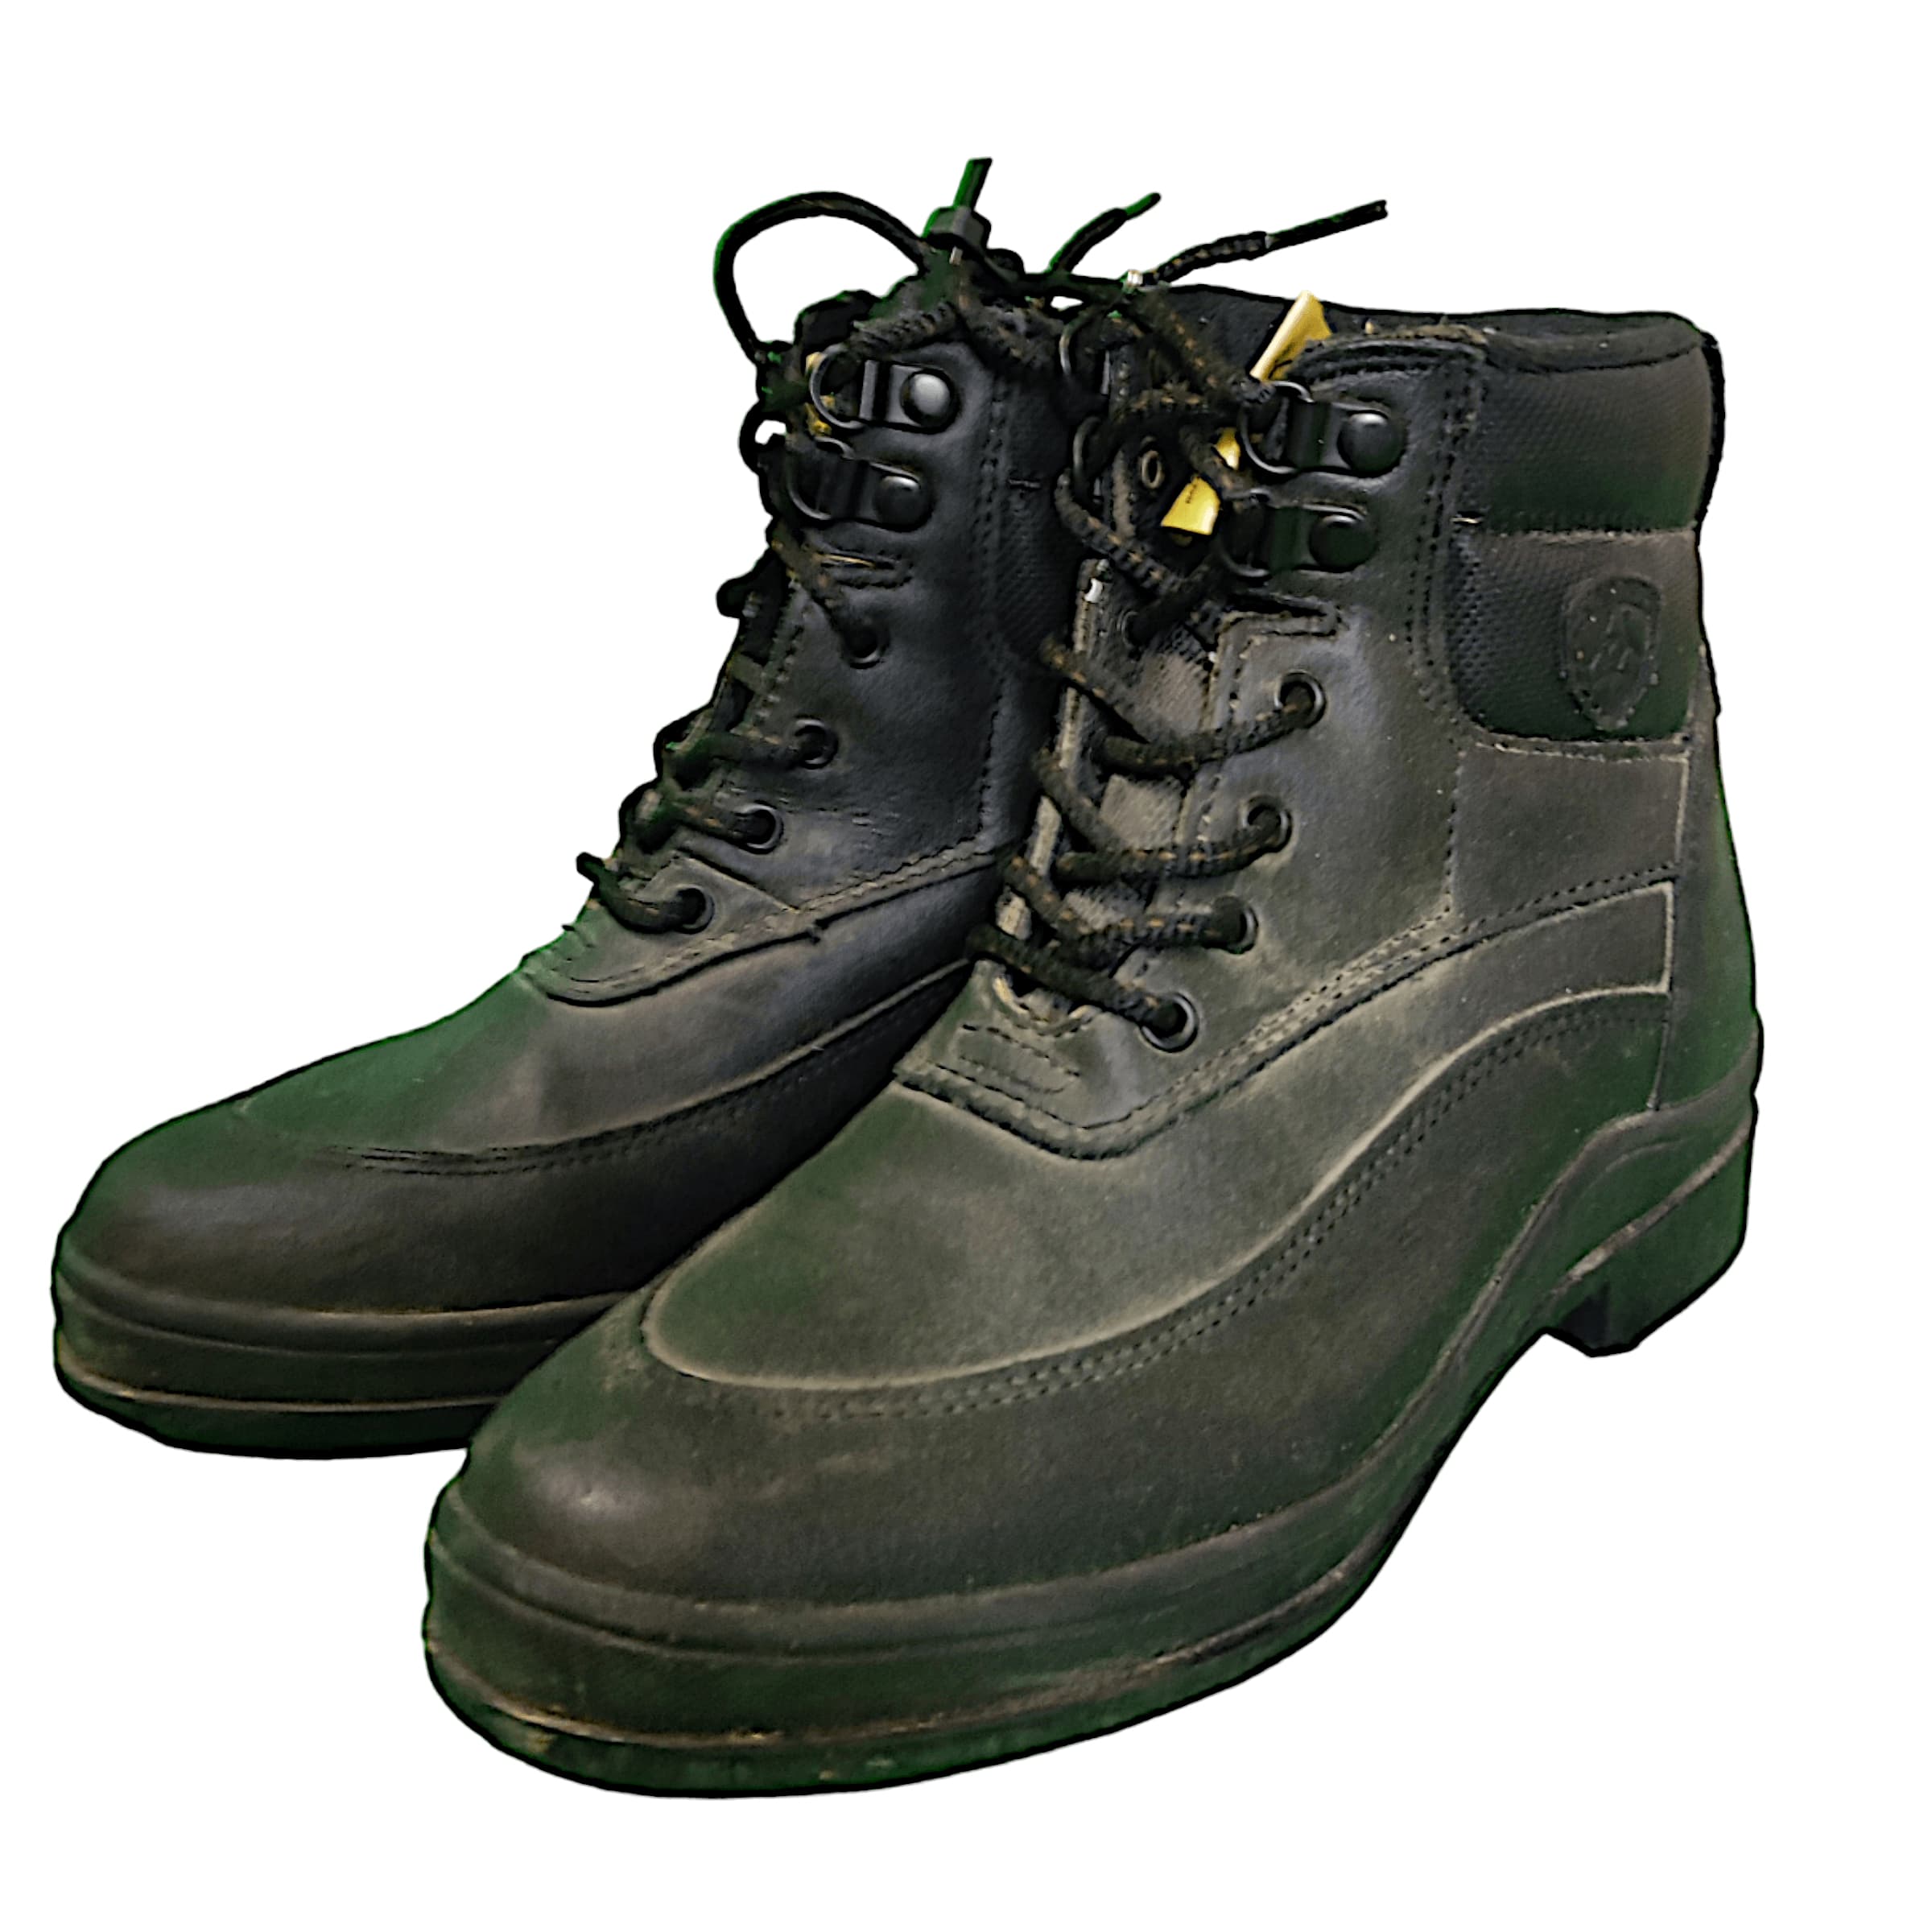 KHS EXCHANGE Ariat Black Winter Paddock Boots